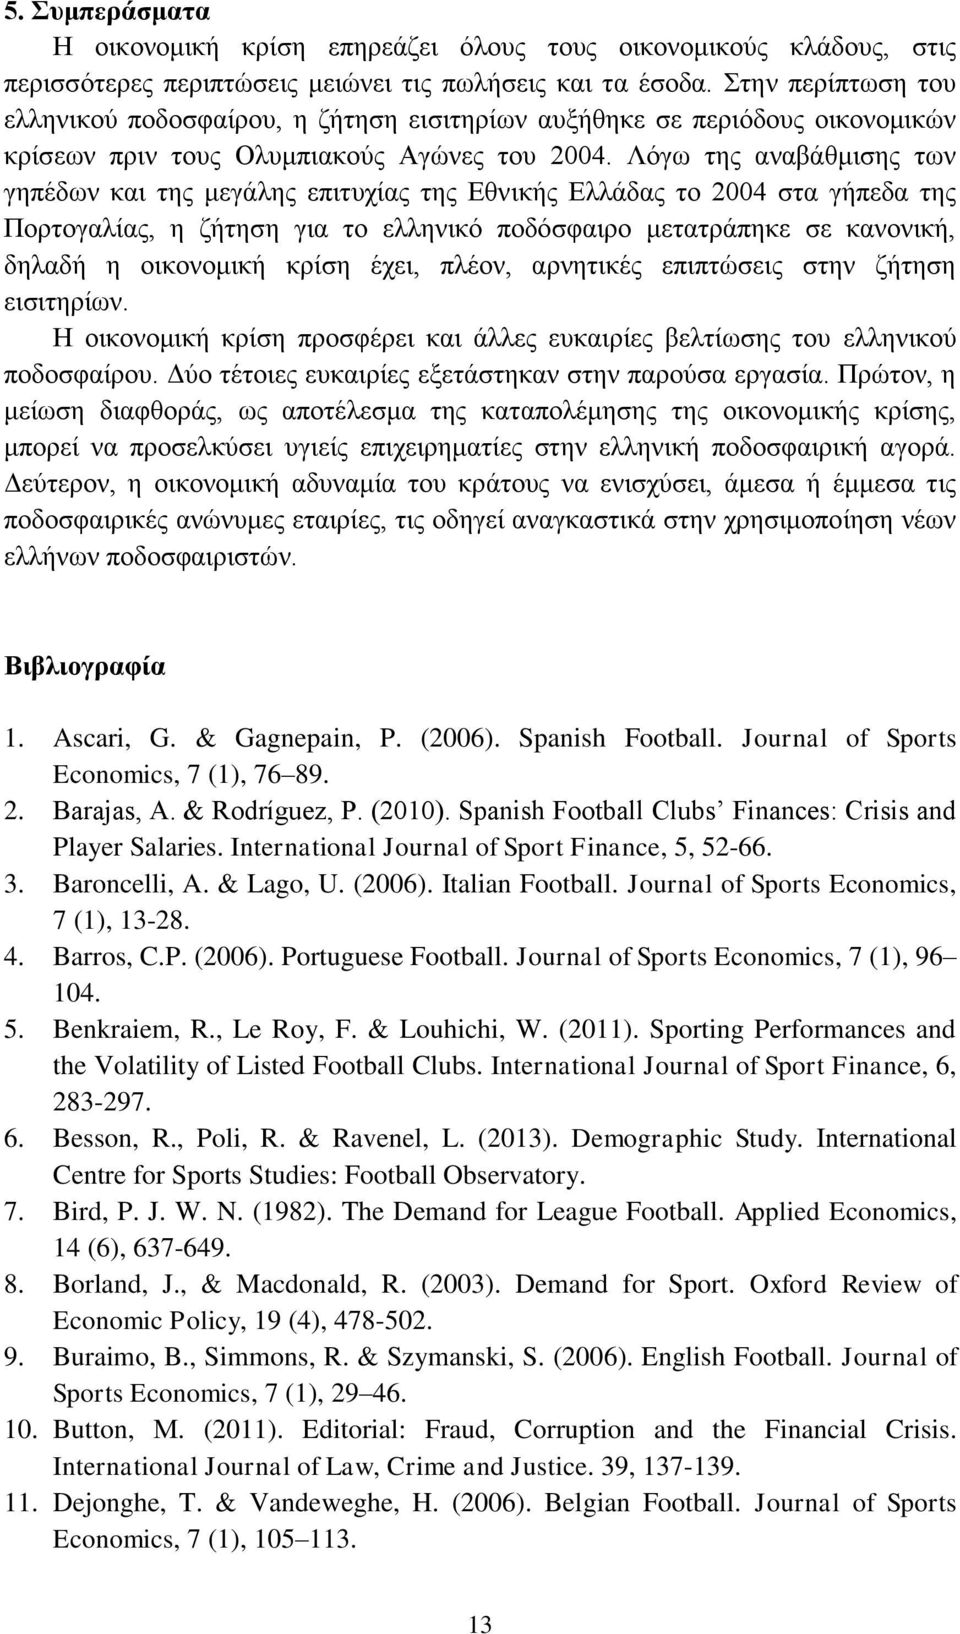 Λόγω της αναβάθμισης των γηπέδων και της μεγάλης επιτυχίας της Εθνικής Ελλάδας το 2004 στα γήπεδα της Πορτογαλίας, η ζήτηση για το ελληνικό ποδόσφαιρο μετατράπηκε σε κανονική, δηλαδή η οικονομική